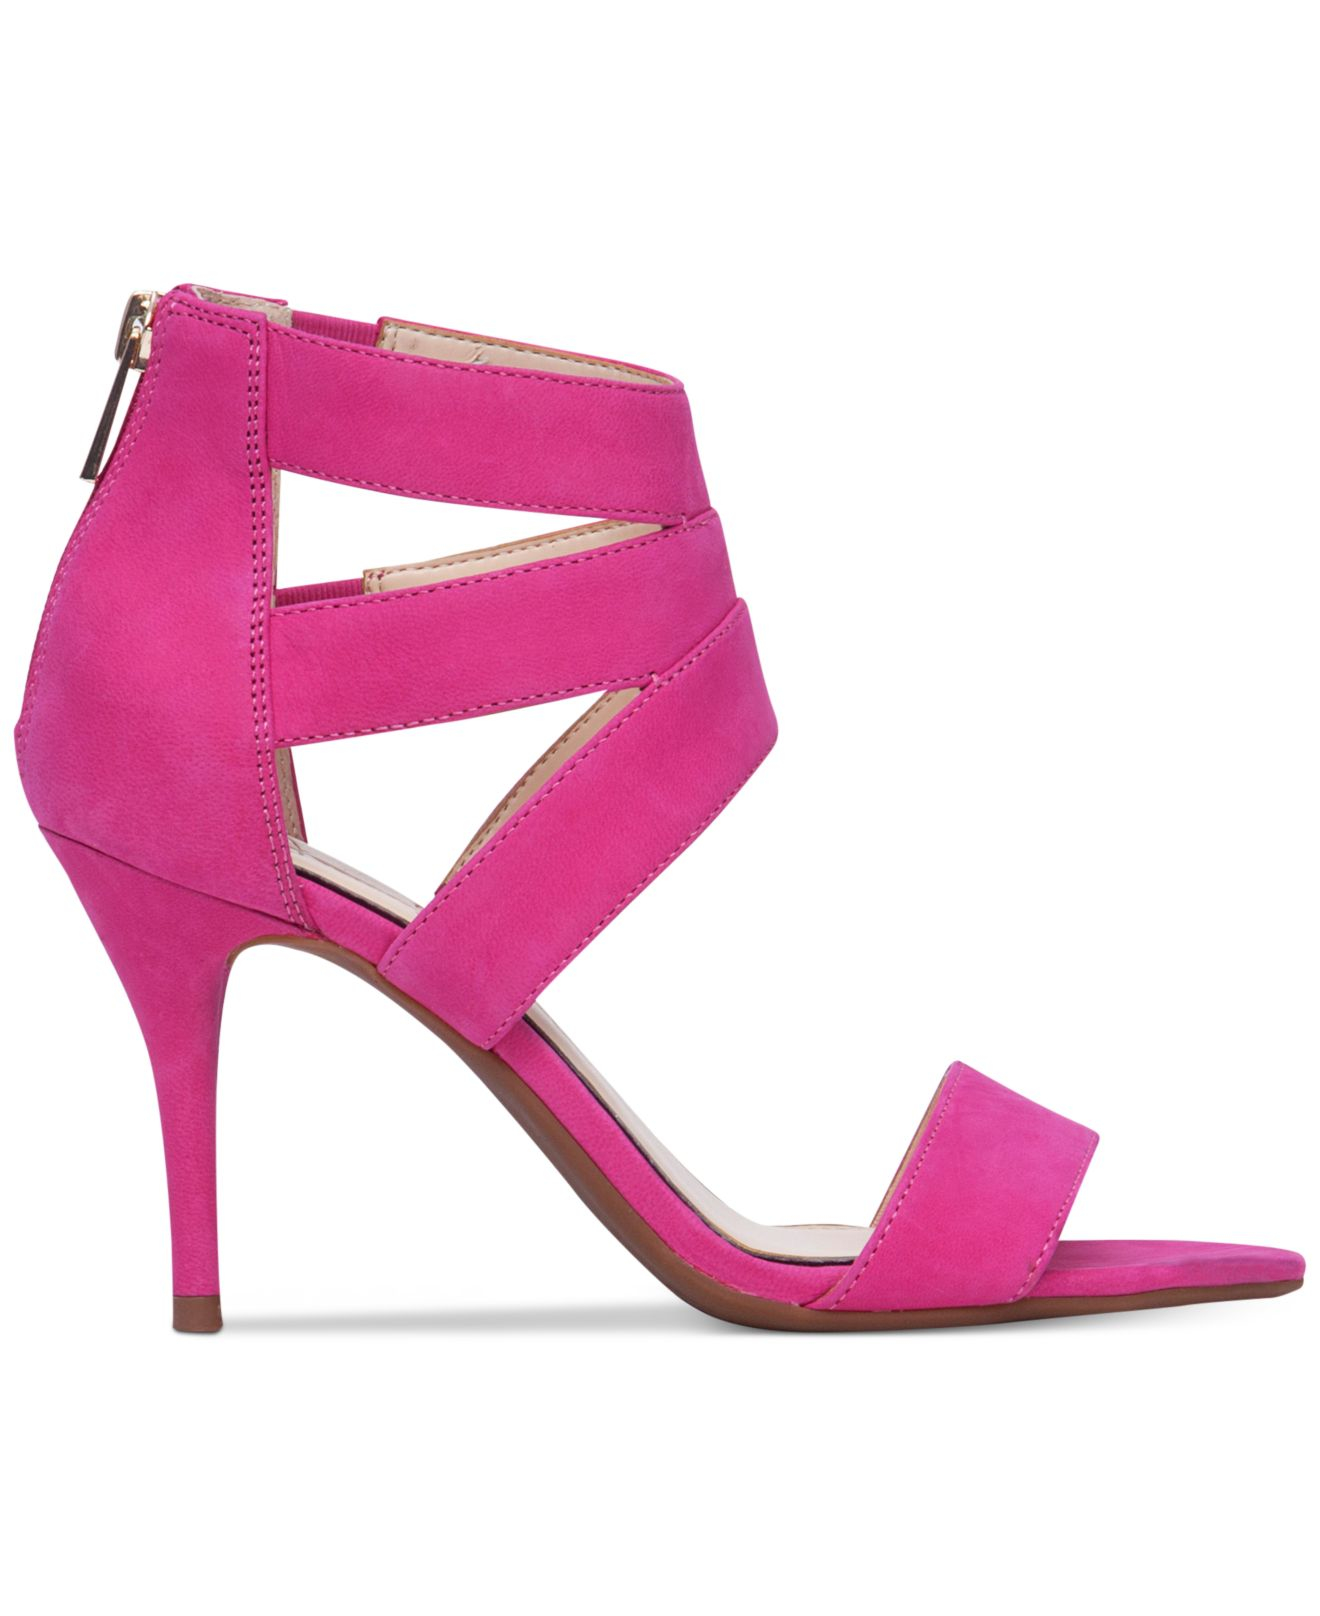 Jessica simpson Marlen Dress Sandals in Pink  Lyst